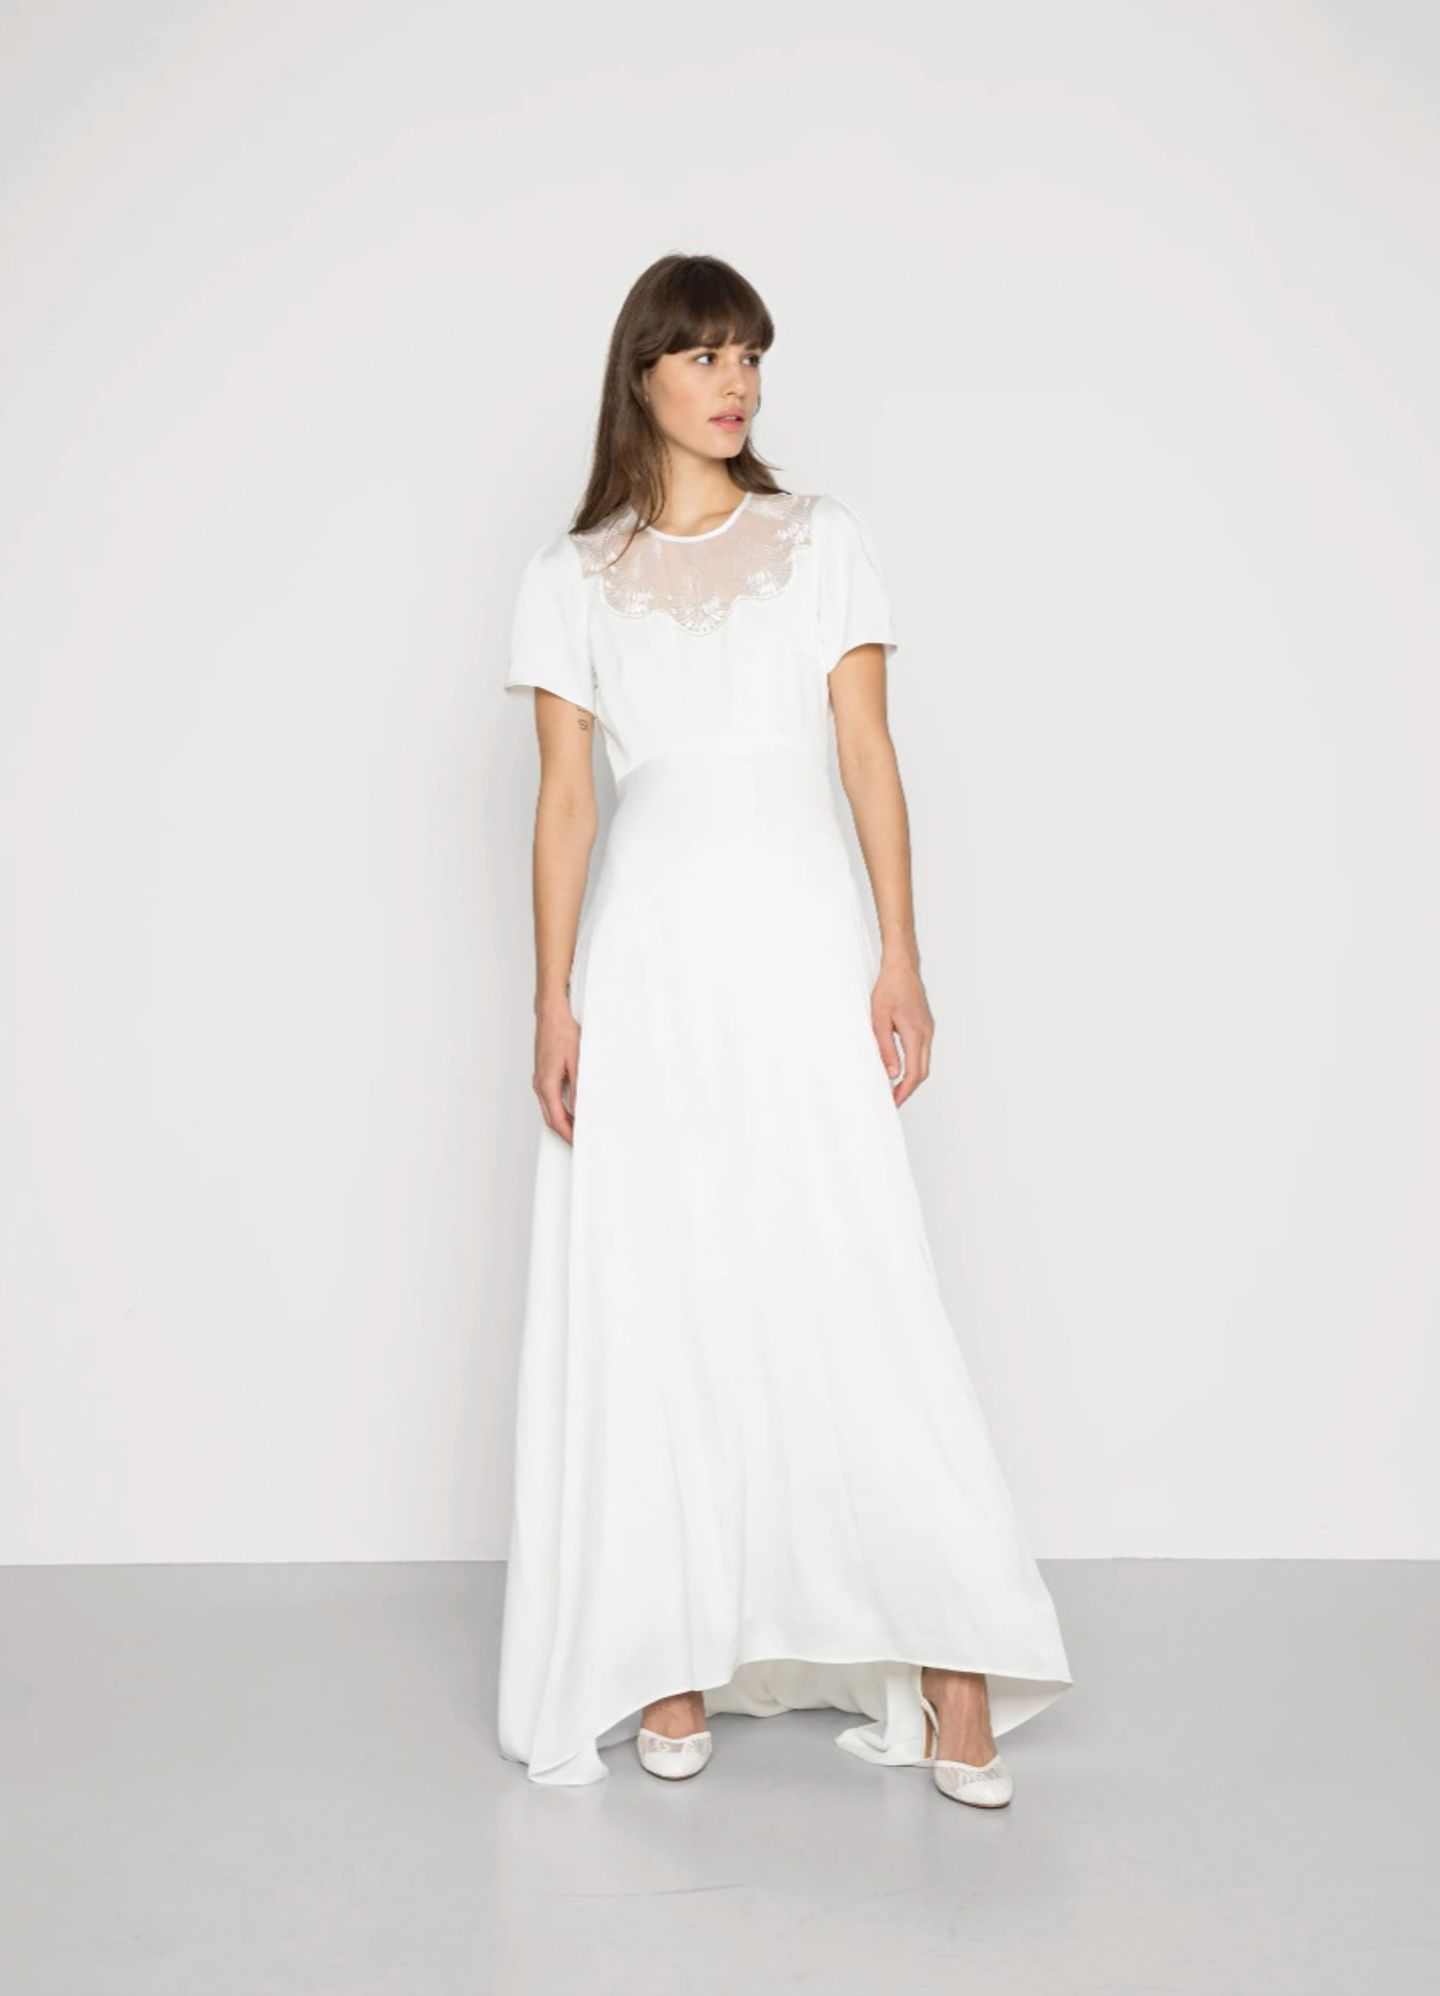 Simpel und trotzdem elegant ist dieses Kleid von YAS. Der transparente Einsatz am Dekolleté und der fließende Schnitt sorgen für einen feenhaften Auftritt. Yasdelia Maxidress von YAS, kostet ca. 120 Euro. 